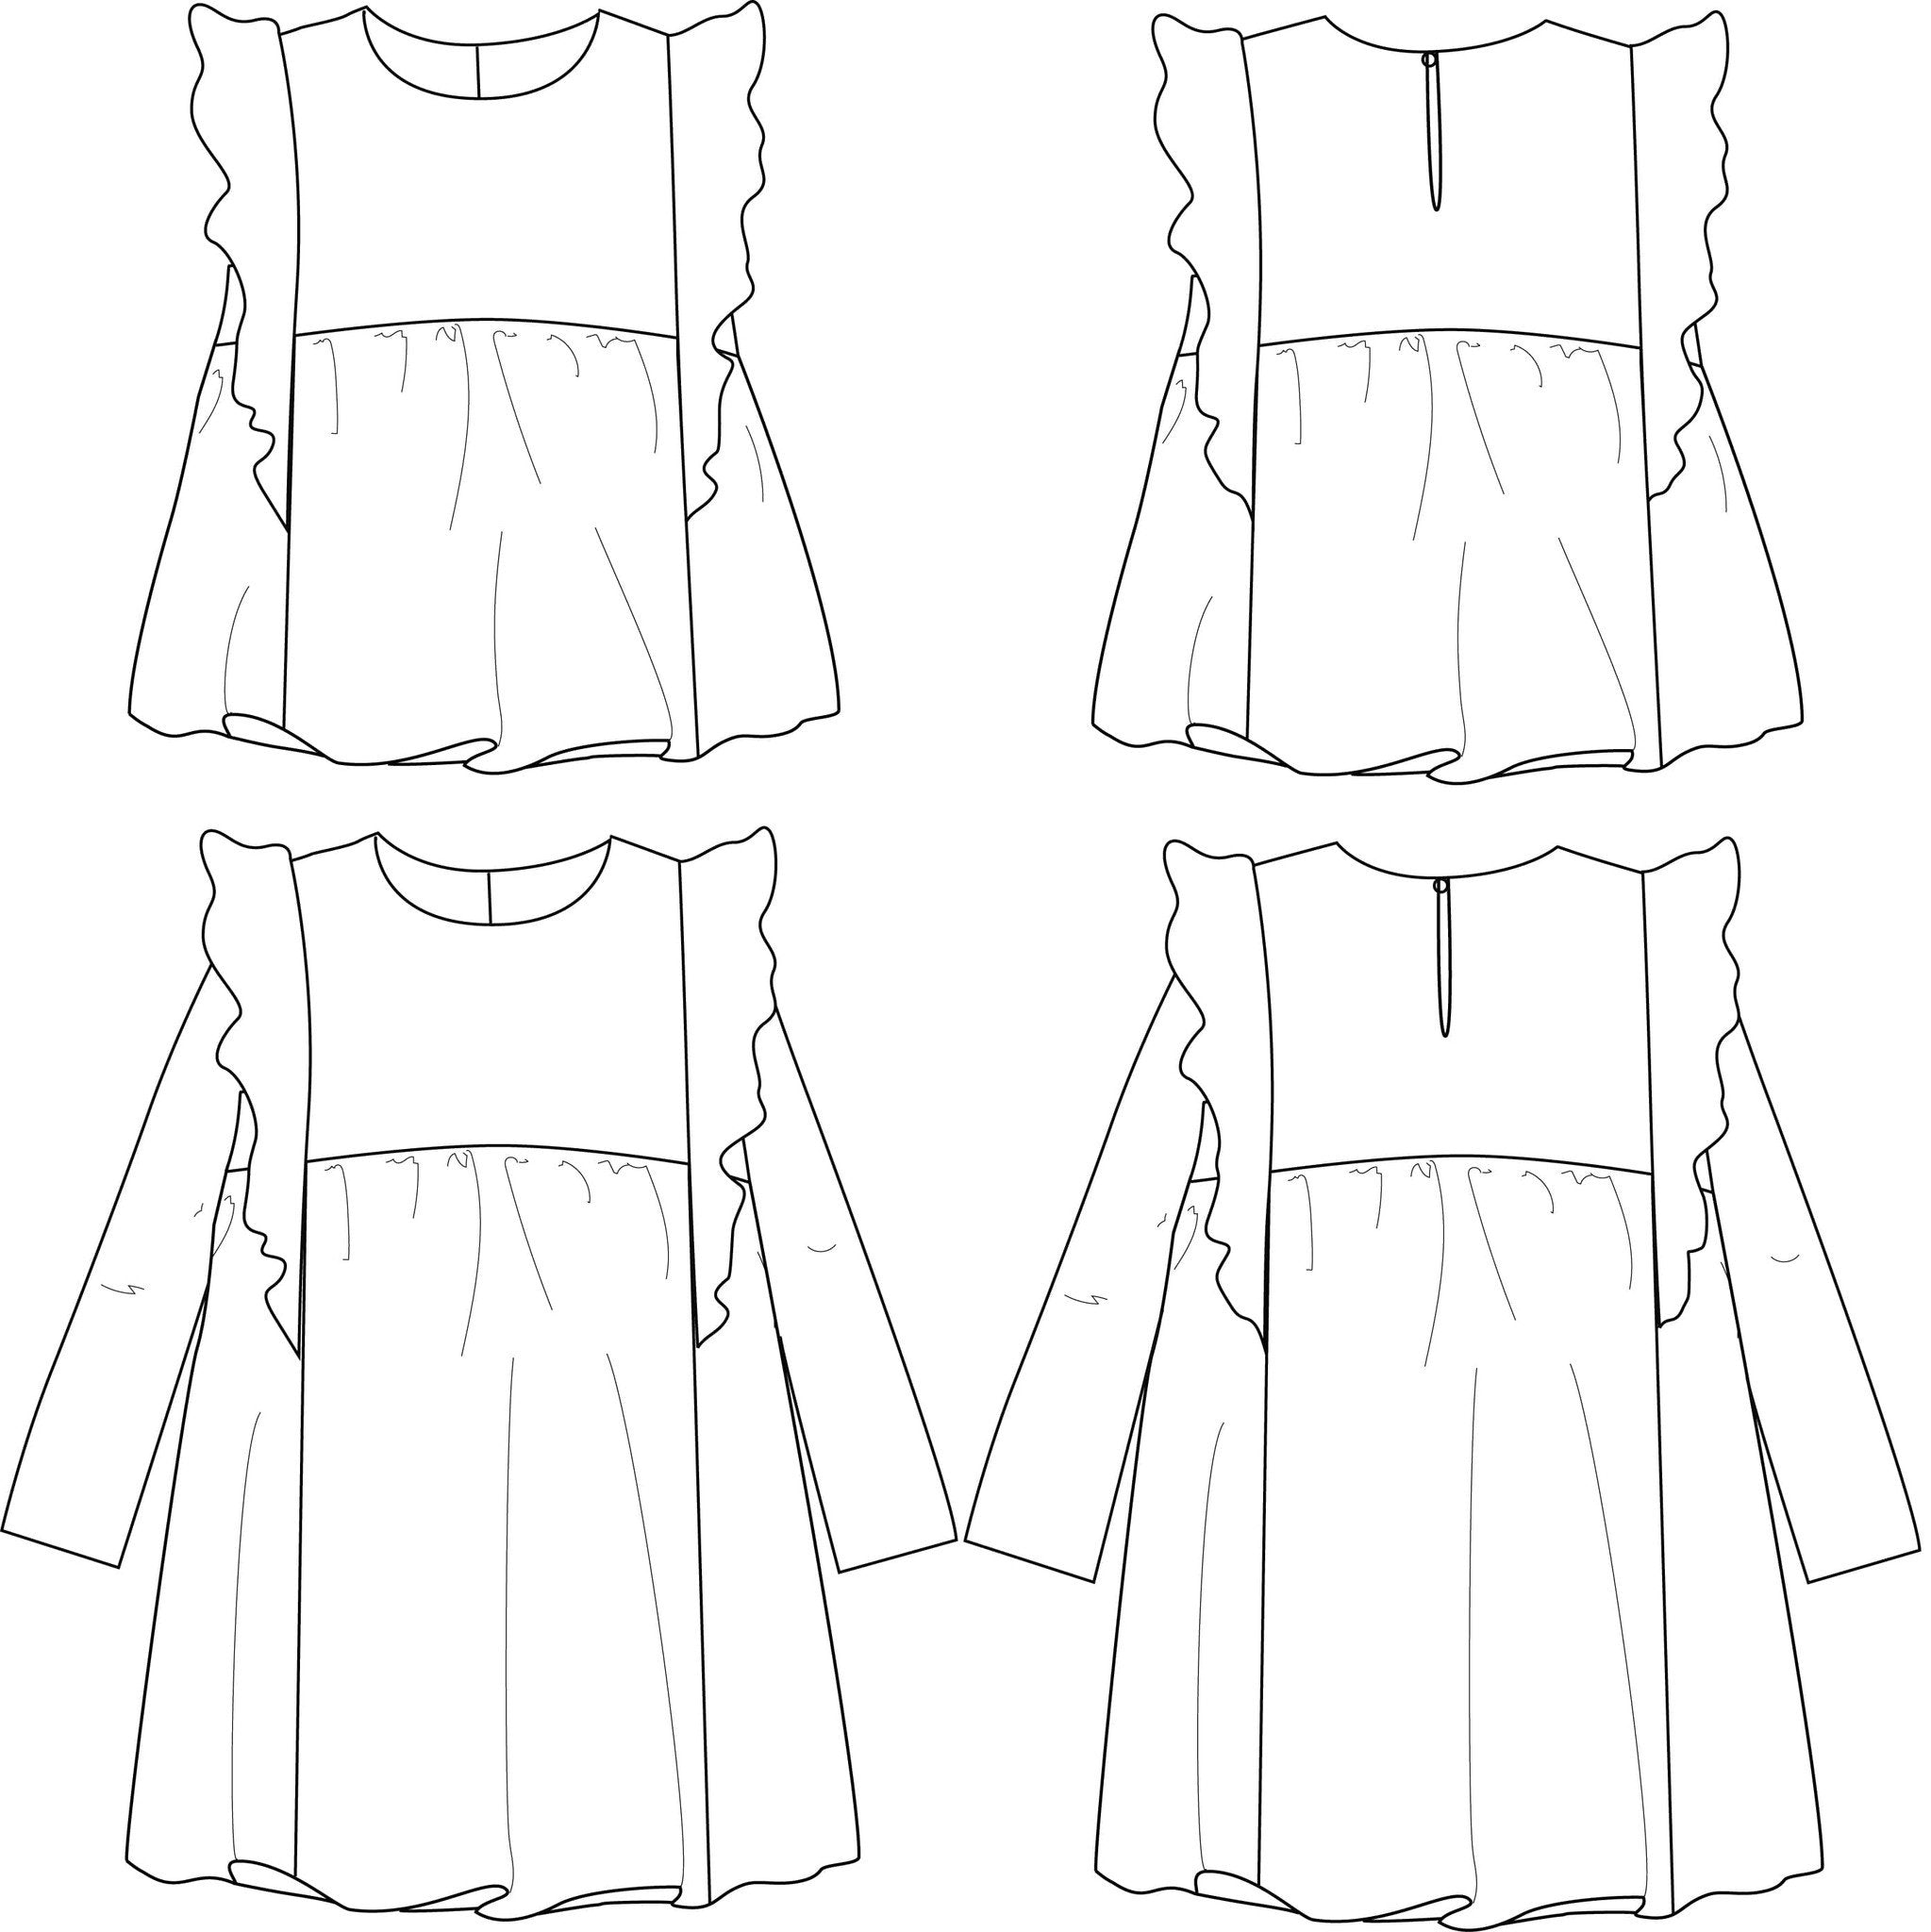 Ikatee - STELLA Duo Blouse & Dress - Girl 3/12 - Paper Sewing Pattern